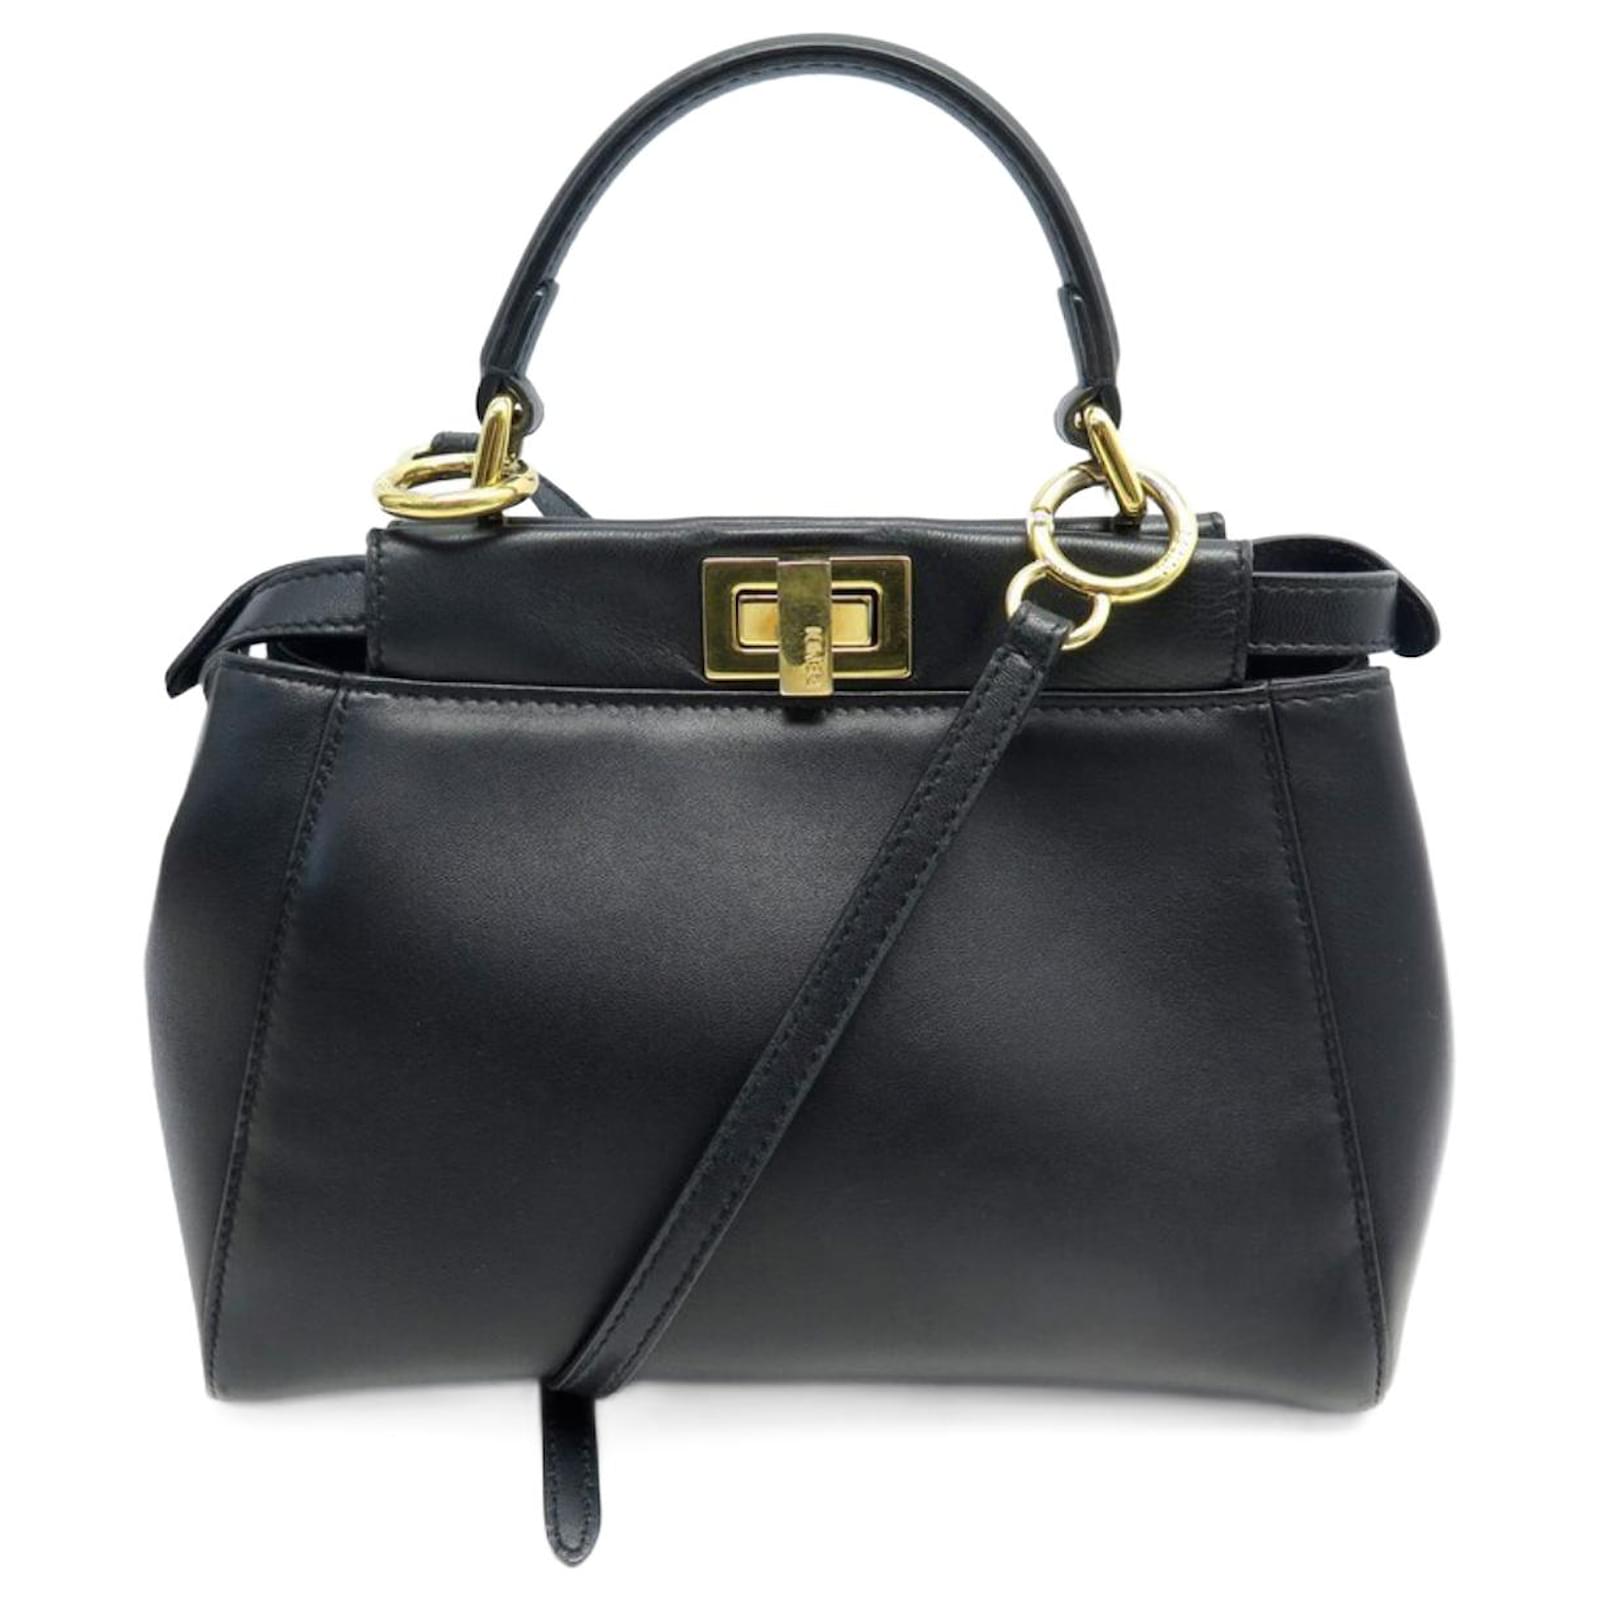 Fendi Micro Peekaboo Leather Bag in Black